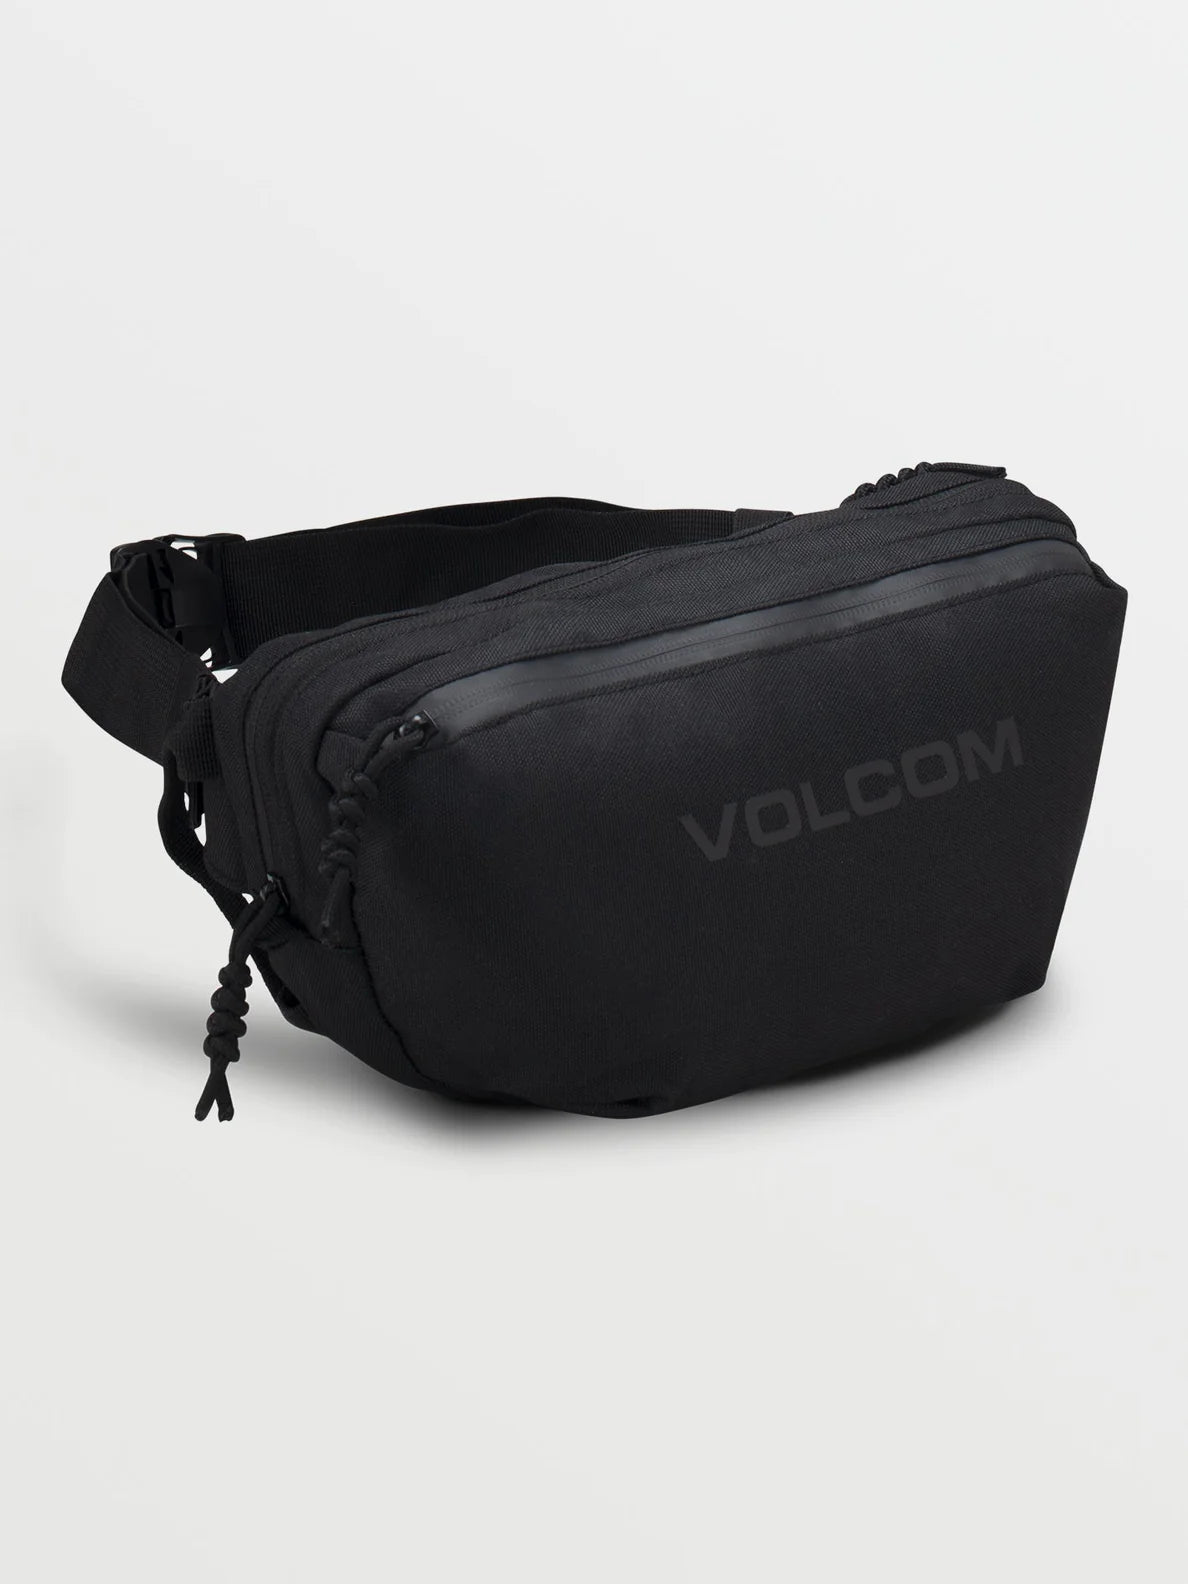 Volcom MINI WAISTED PACK Tasche Bag - Black